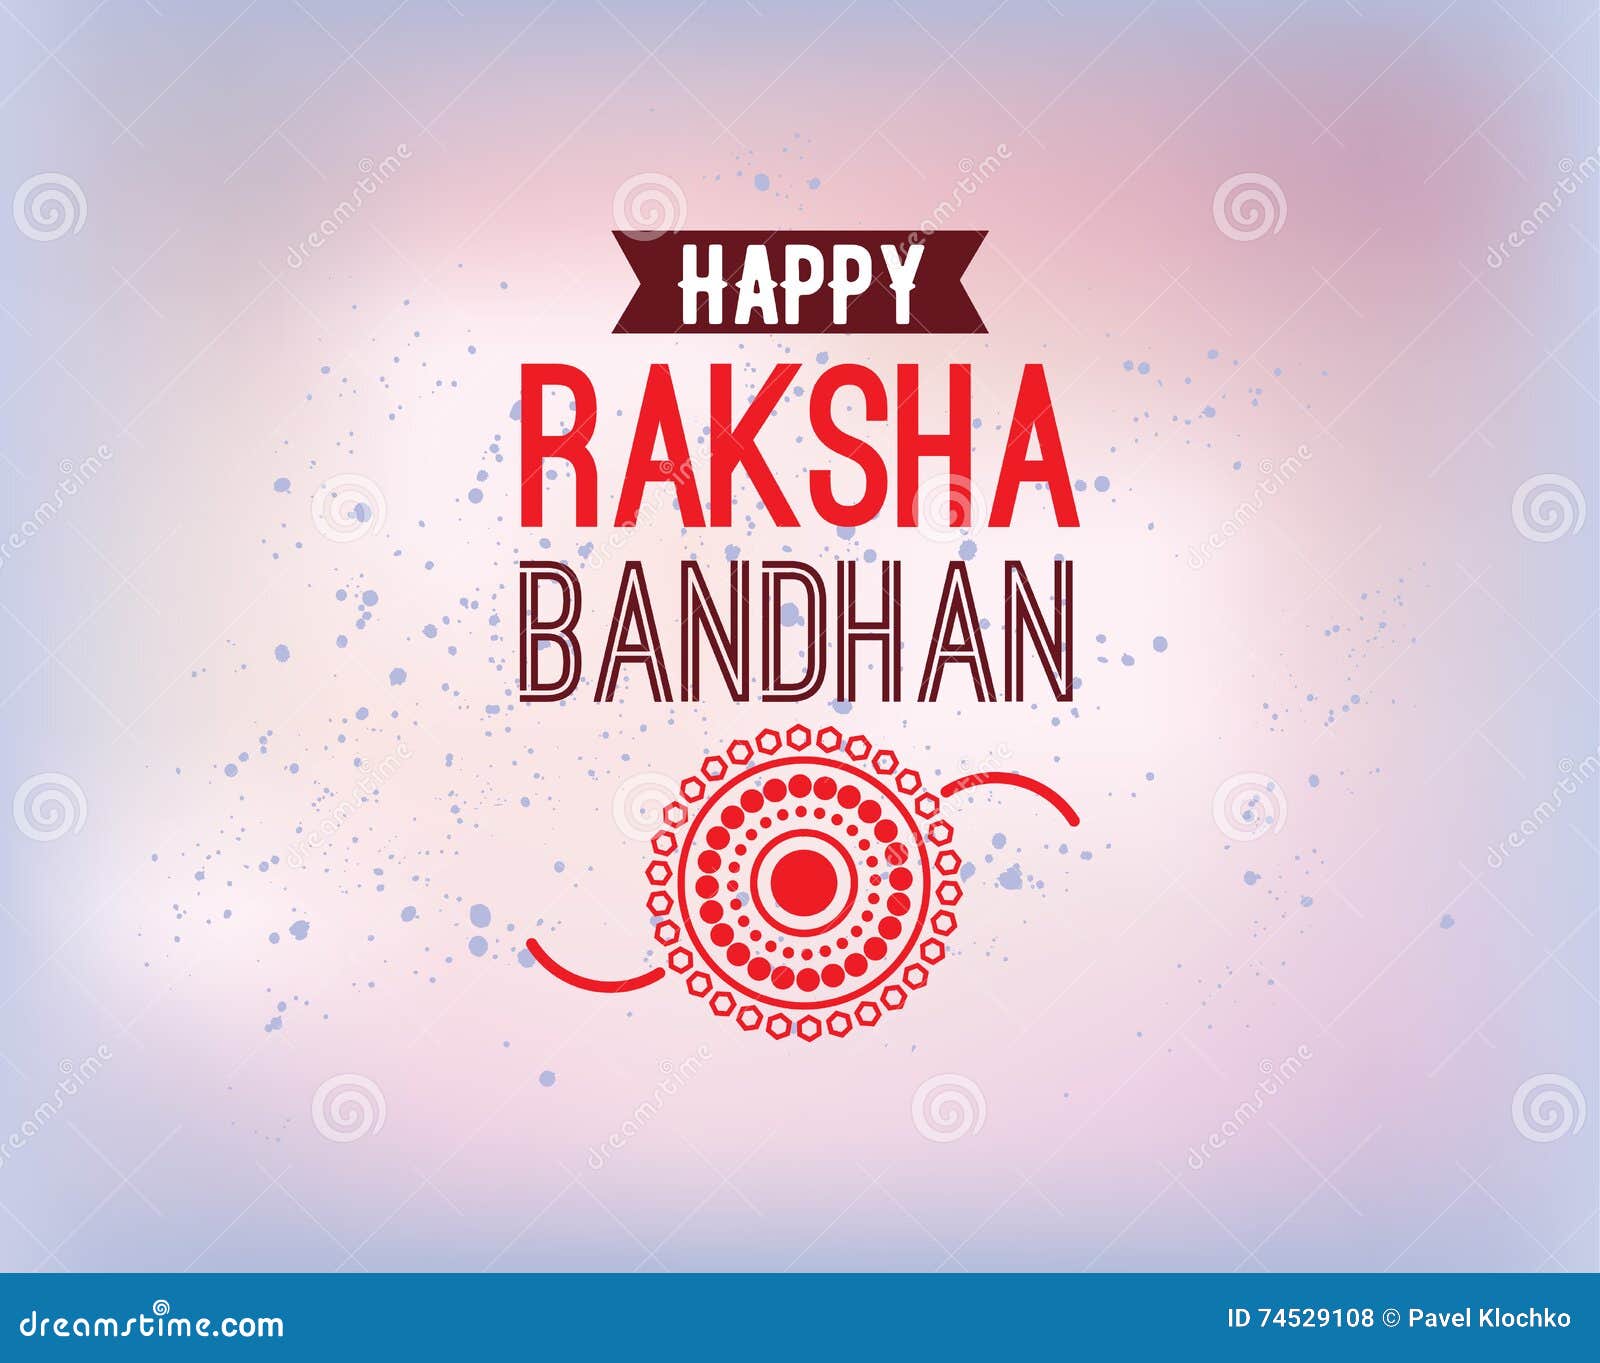 happy-raksha-bandhan-beautiful-realistic-traditional-banner-design